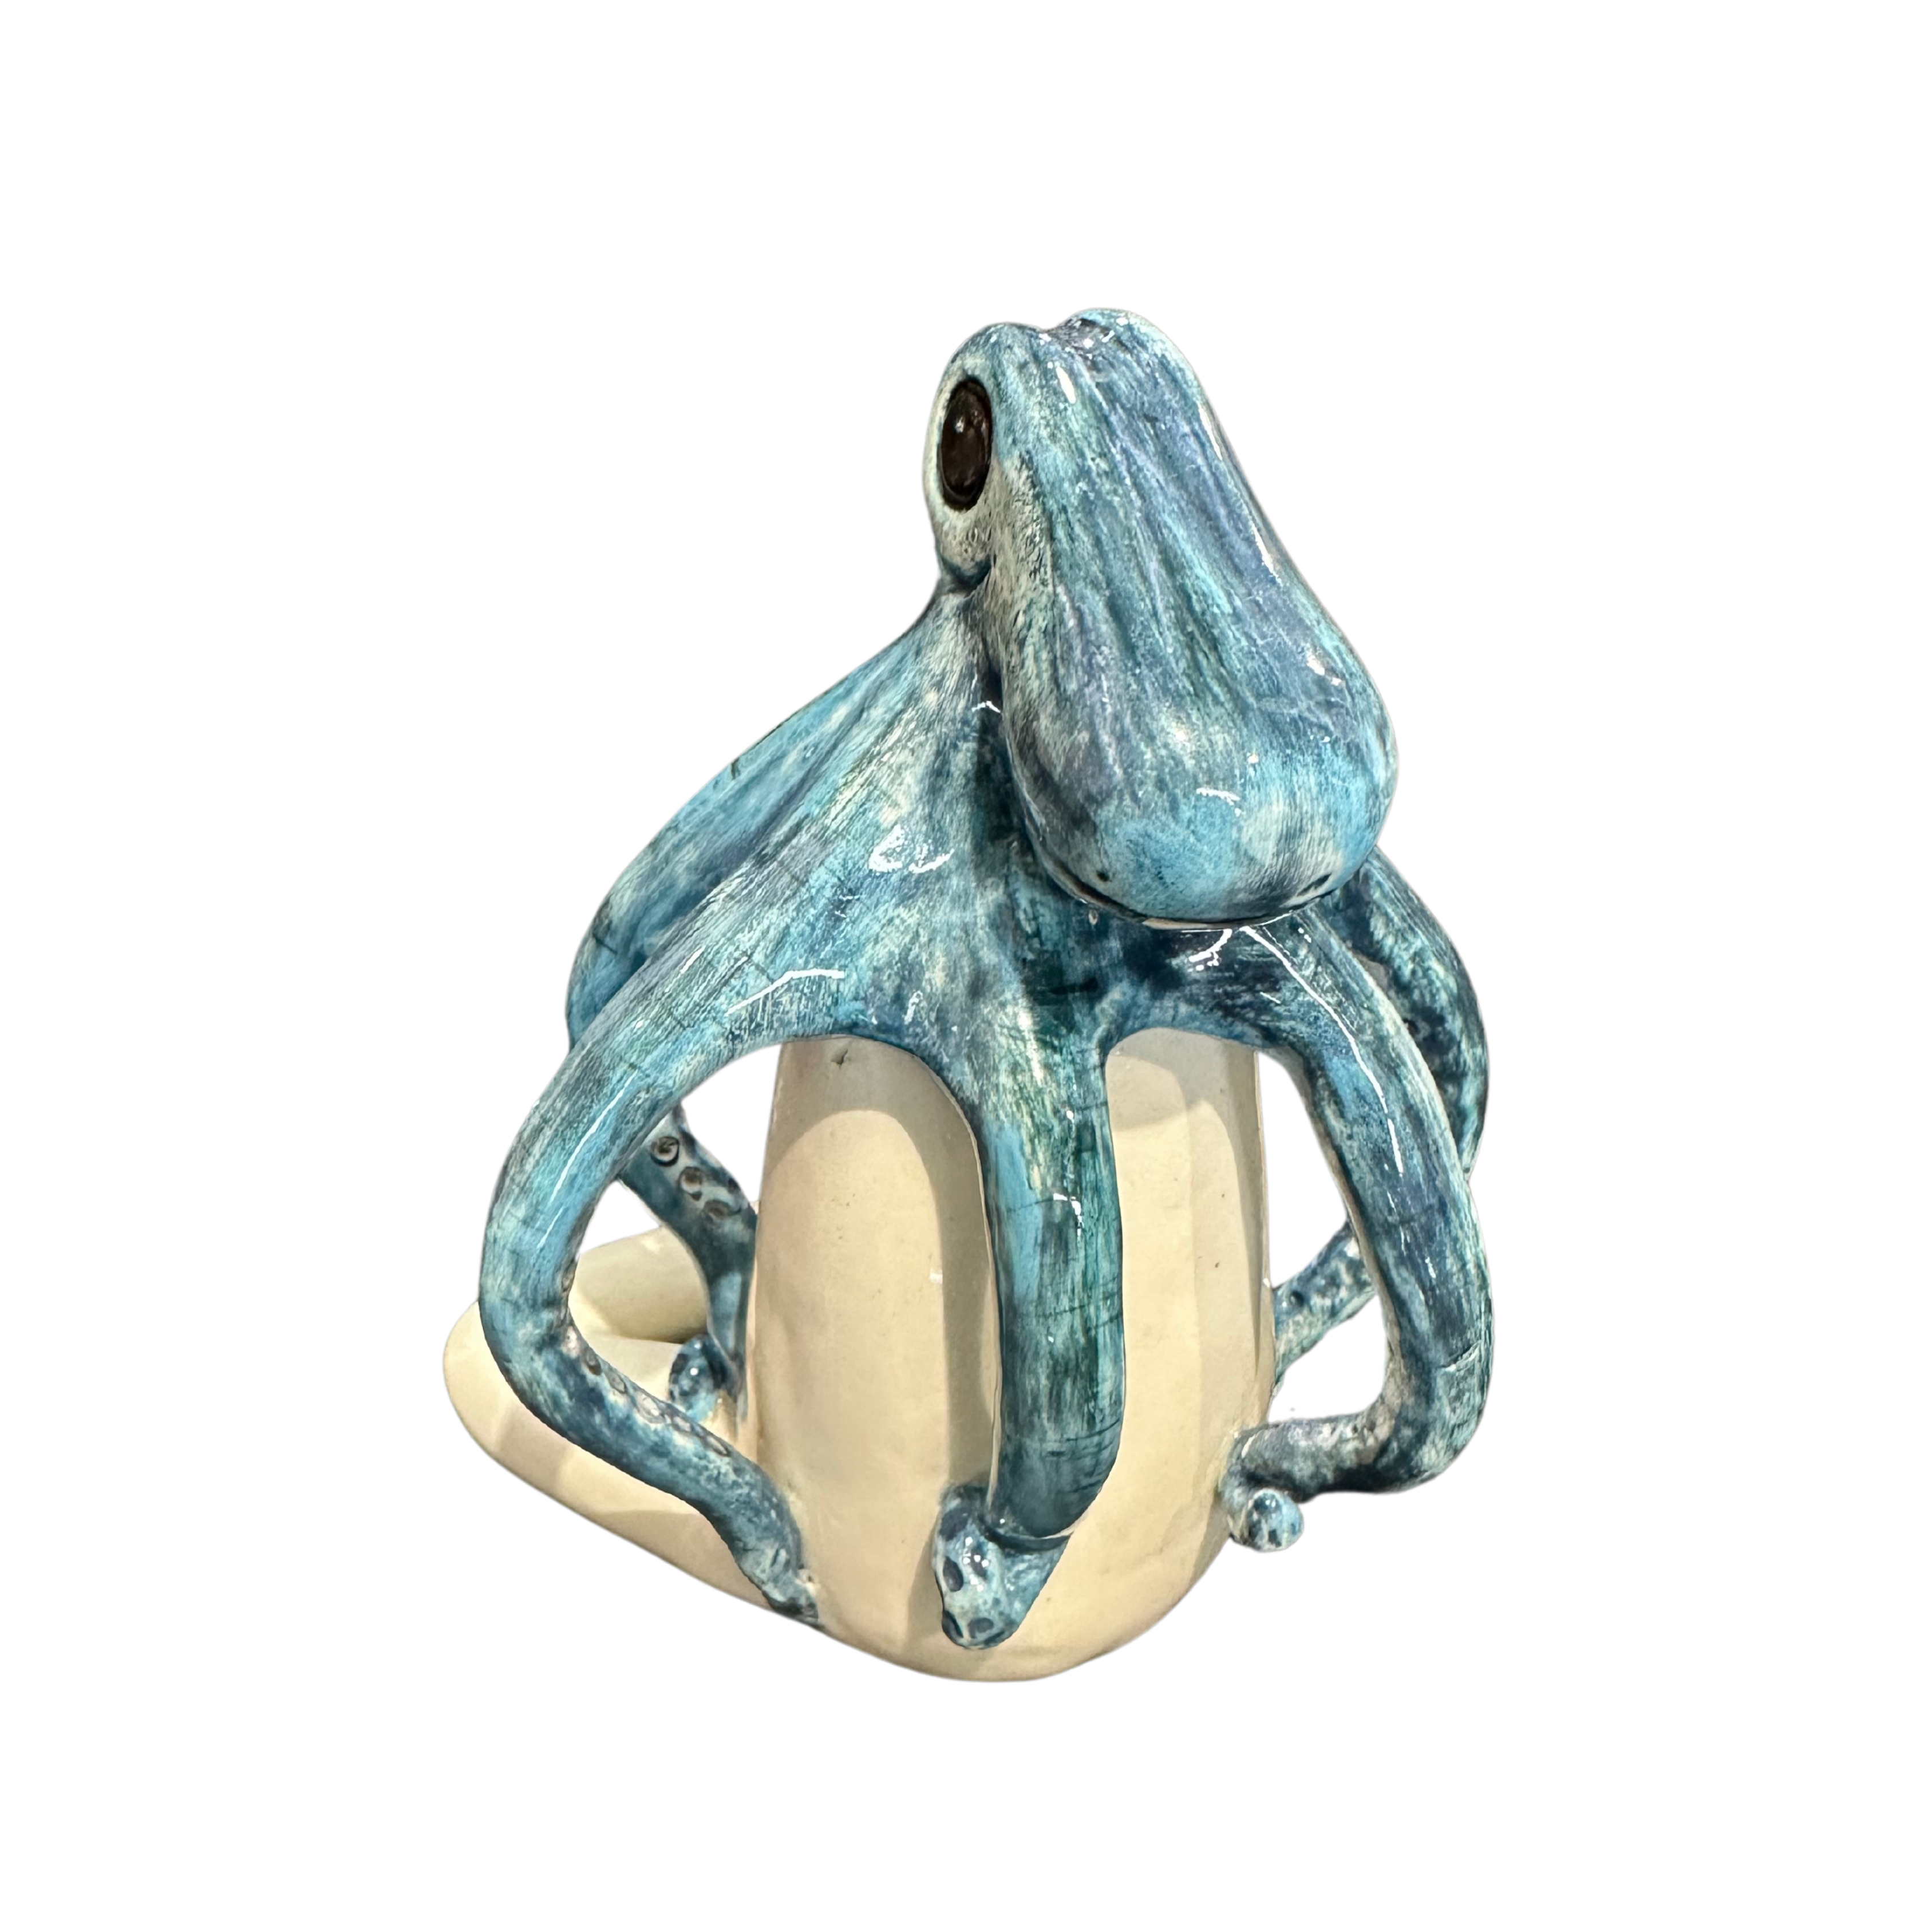 Medium Ceramic Blue Octopus Statue - Fantasea Range